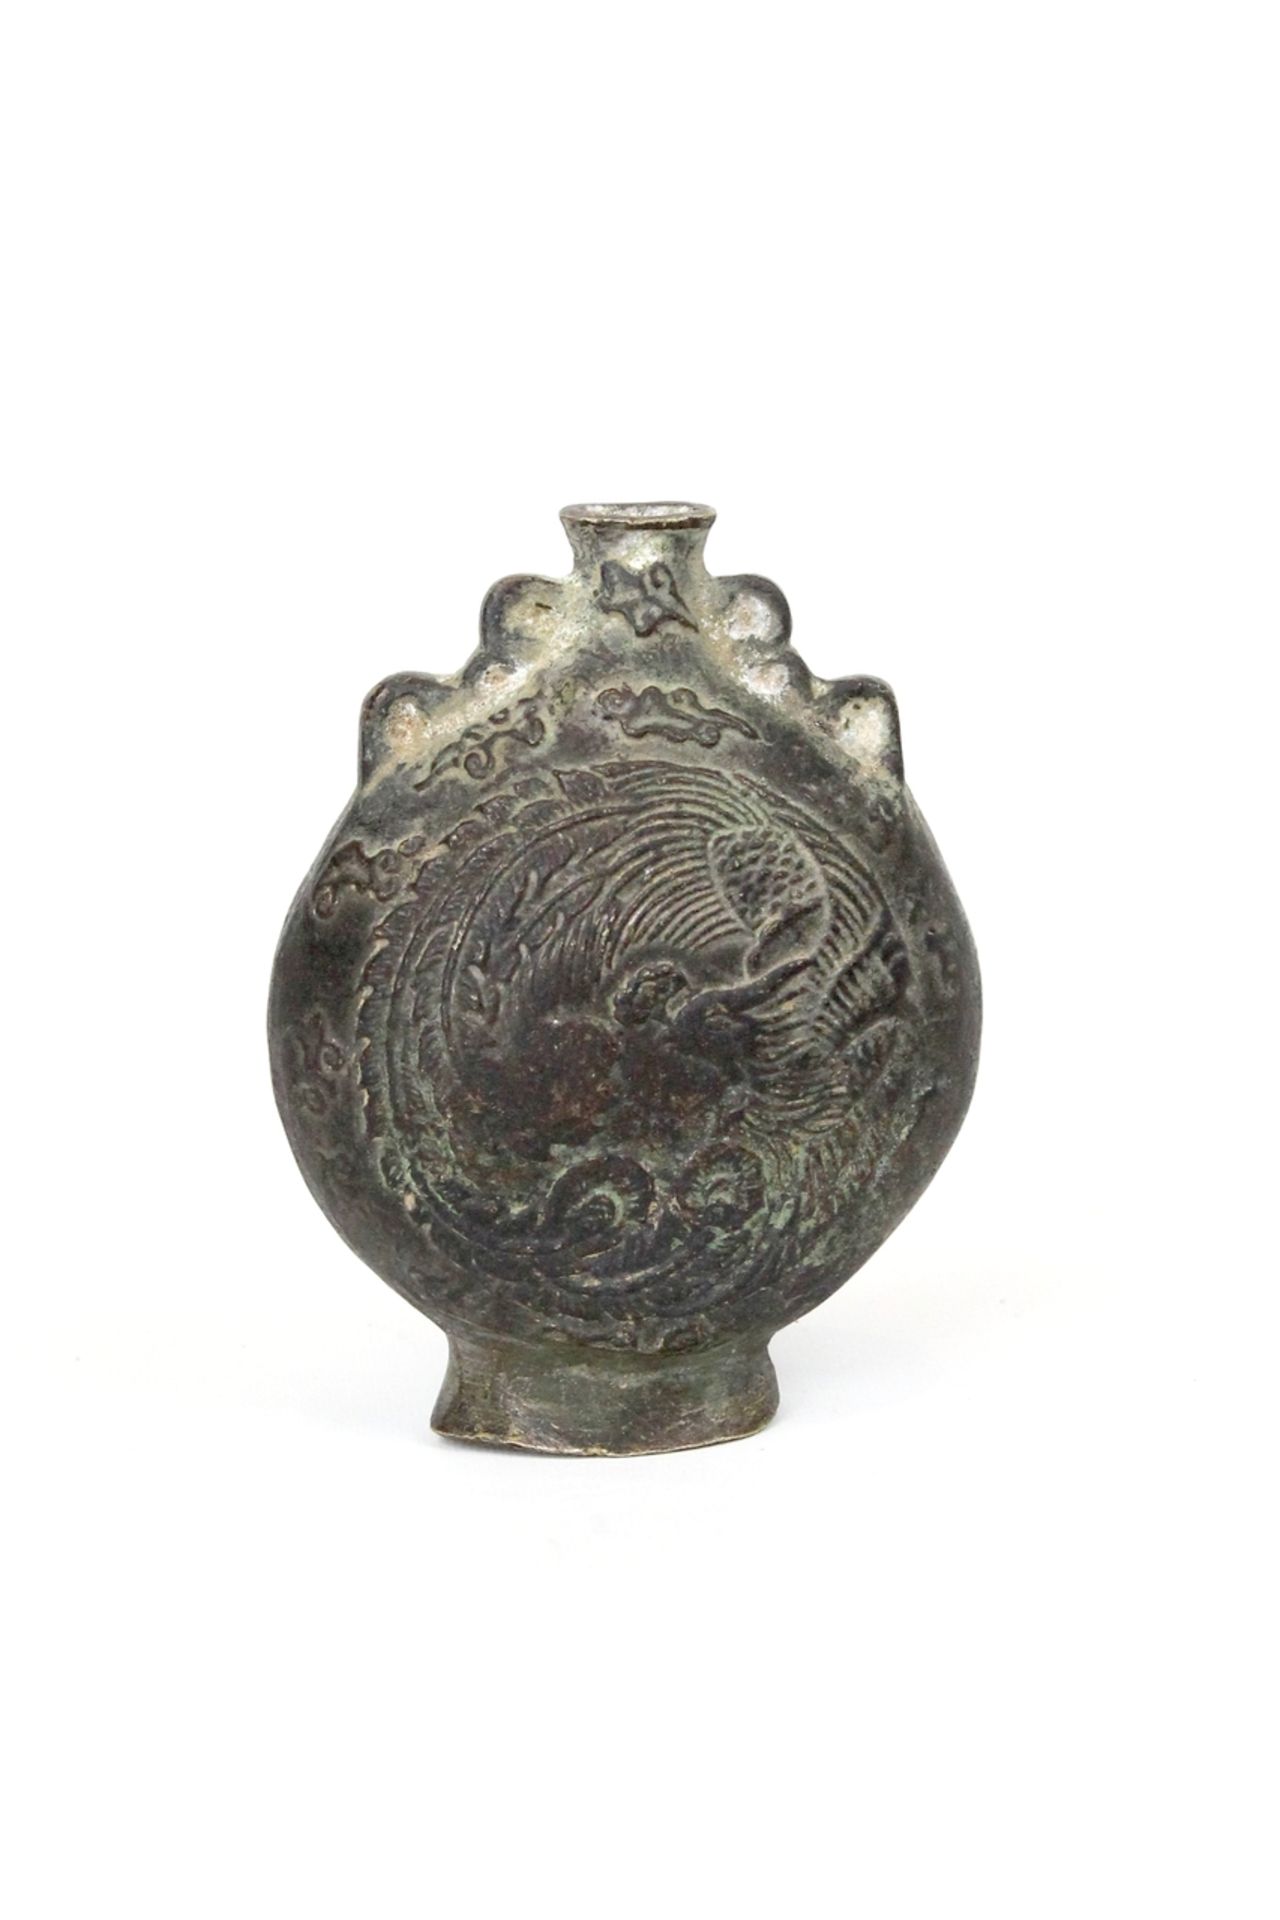 China kleine Bronze Vase " Drachen " - Image 2 of 4